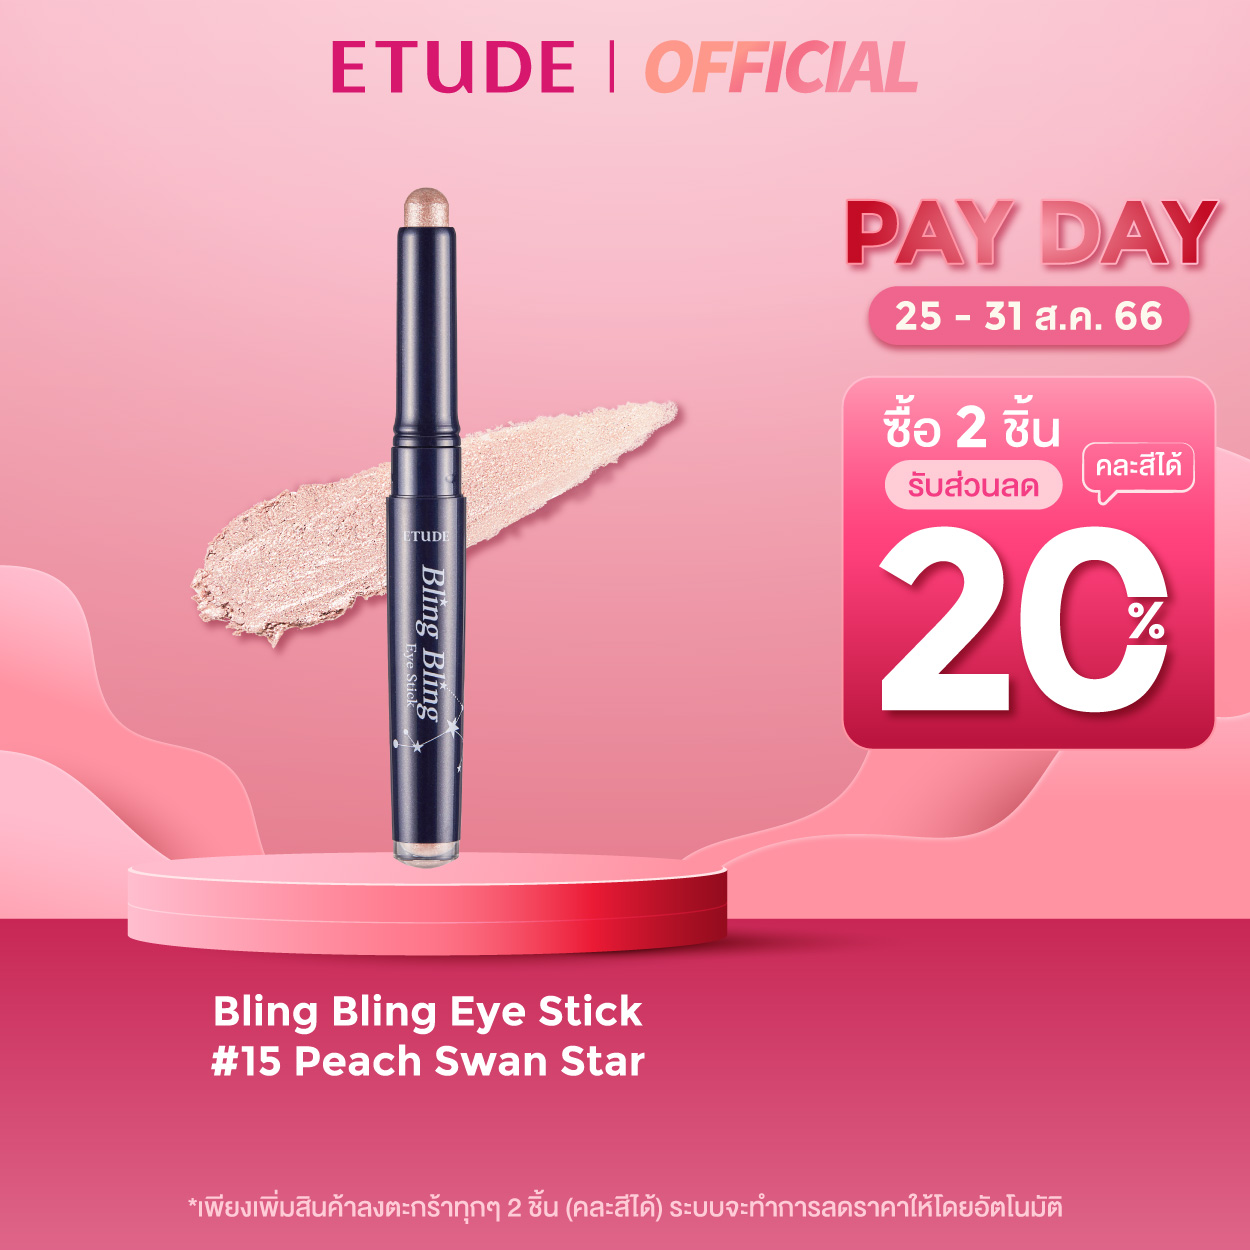 โปรโมชั่น Flash Sale : (ส่วนลดเฉพาะคำสั่งซื้อ 25-31 ส.ค. 66) ETUDE Bling Bling Eye Stick (1.4 g) อีทูดี้ (อายแชโดว์รูปแบบแท่ง)